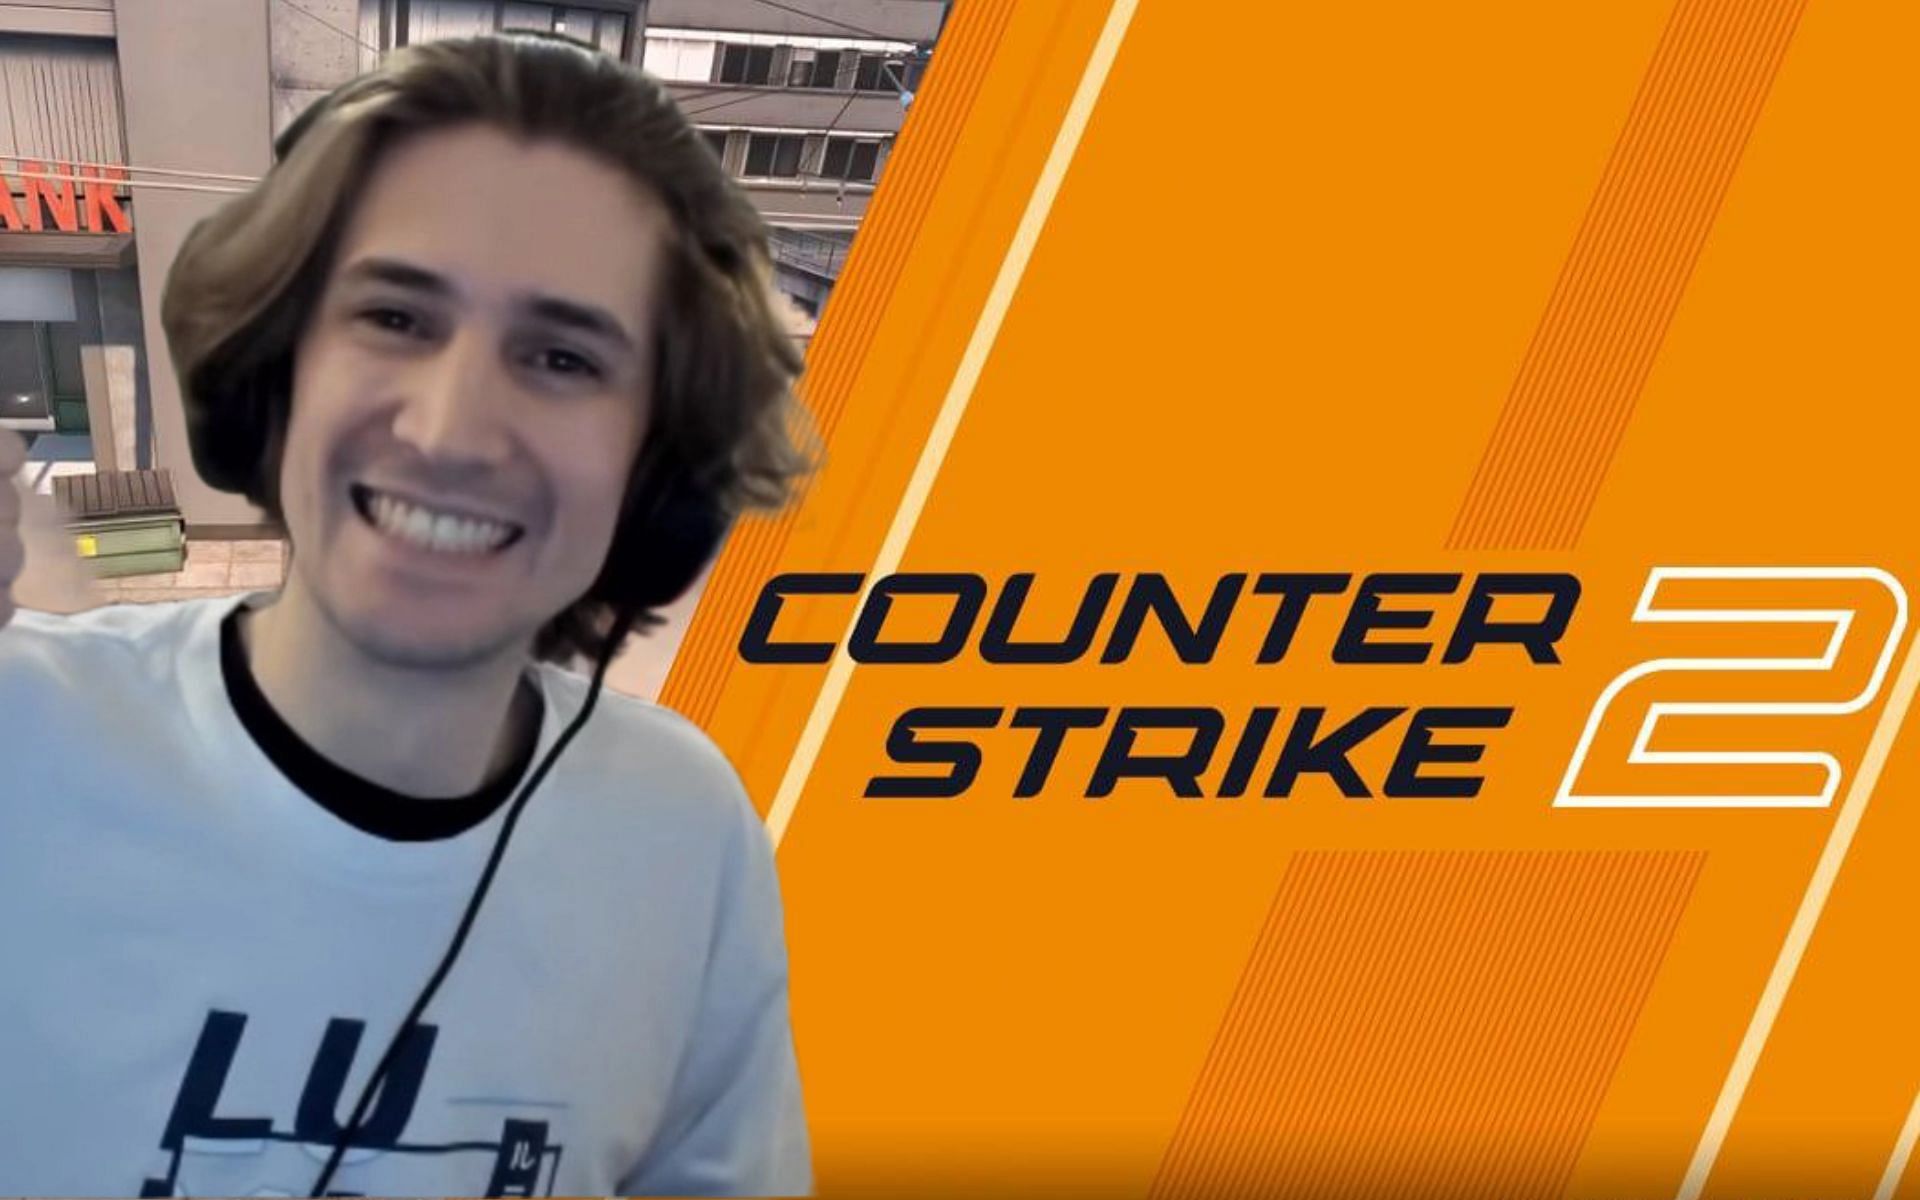 xQc révèle qu’il a été invité à jouer à Counter-Strike 2 et affiche des messages directs sur Twitter